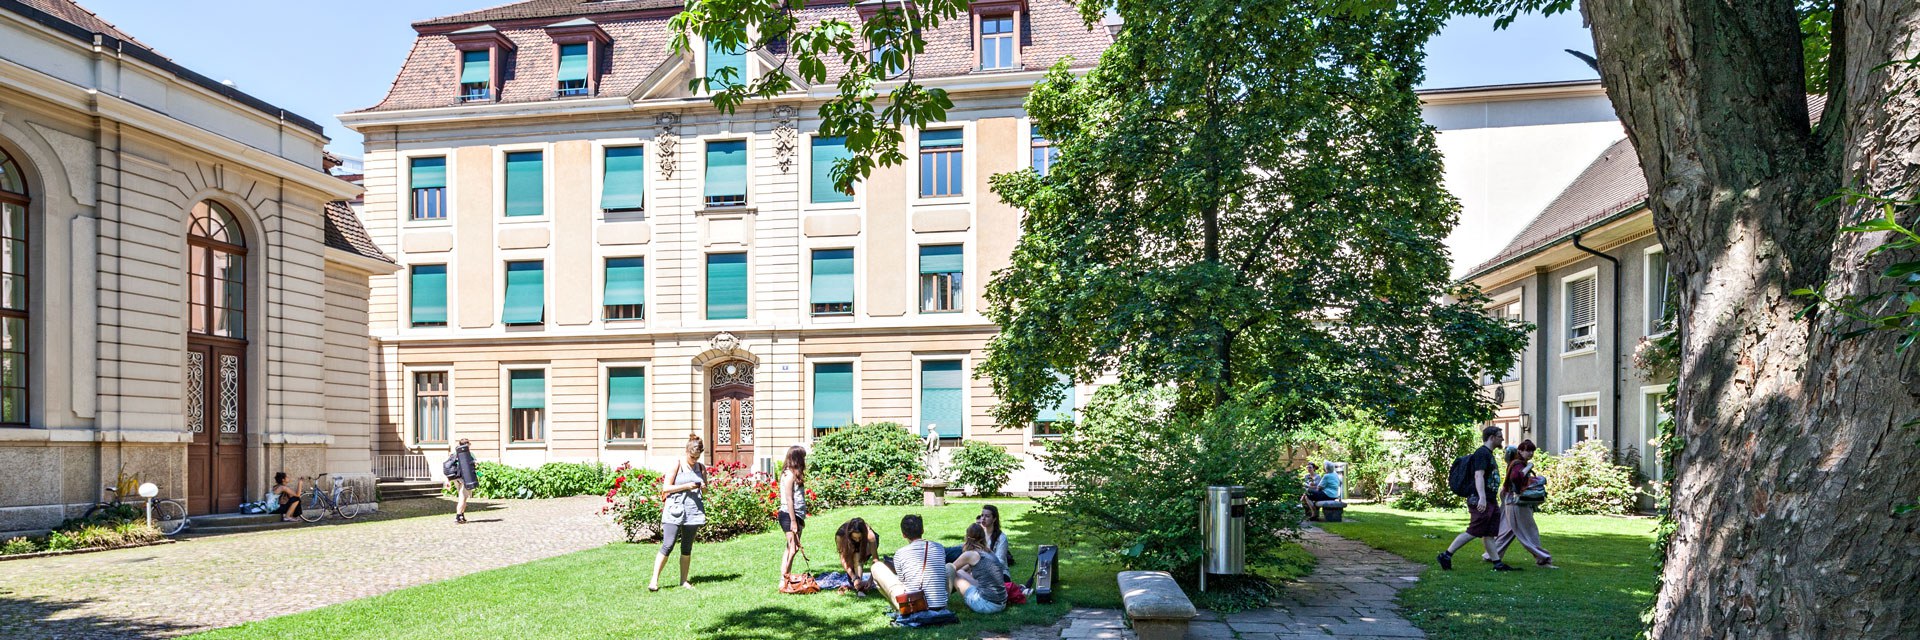 Hochschule für Musik Freiburg: Zur Umbenennung des Hochschulareals